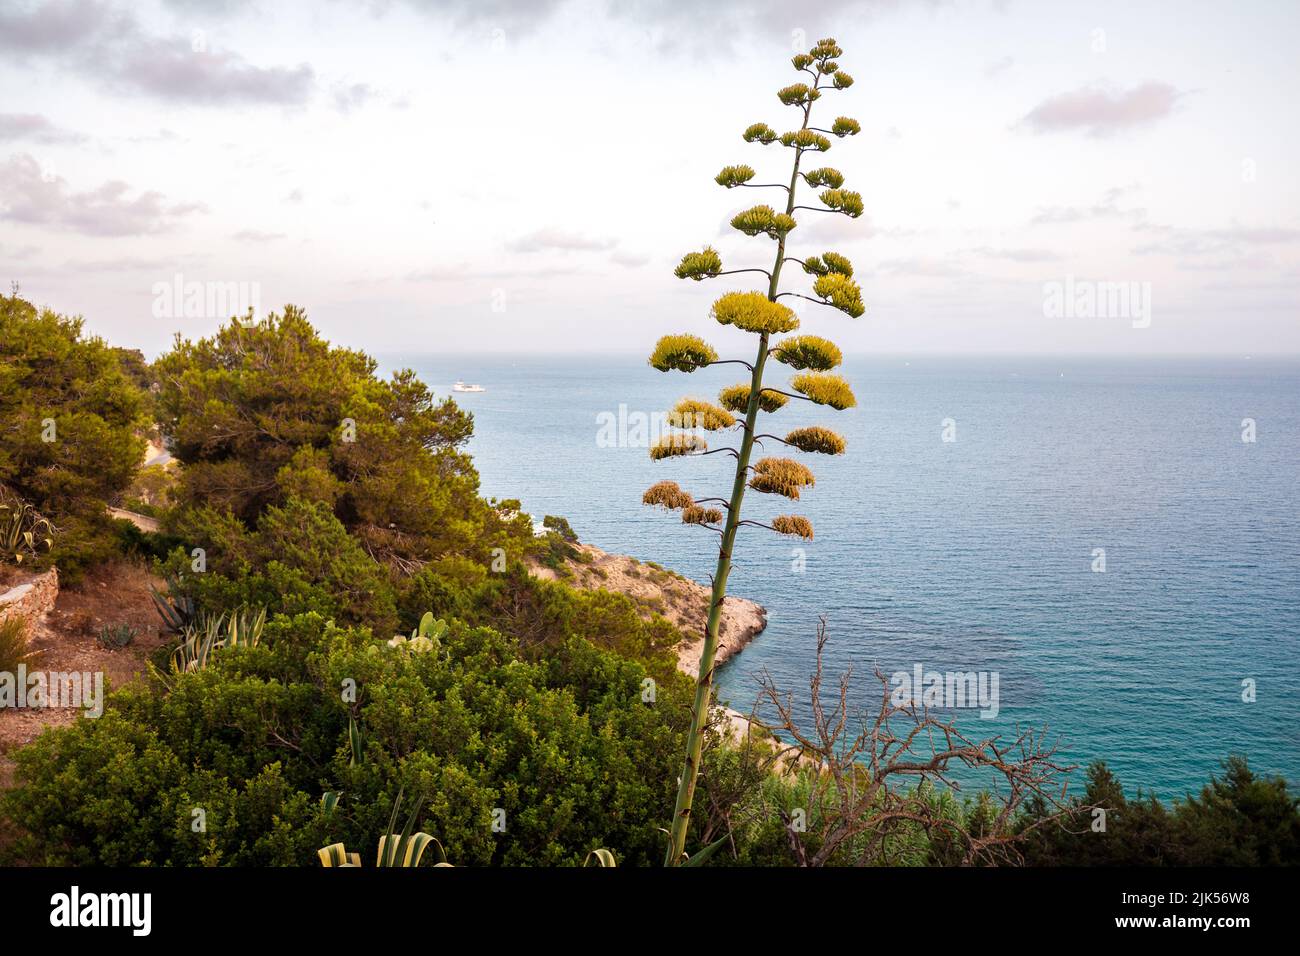 Agave en pleine floraison sur la côte méditerranéenne avec vue sur la mer et le ciel bleu. Banque D'Images